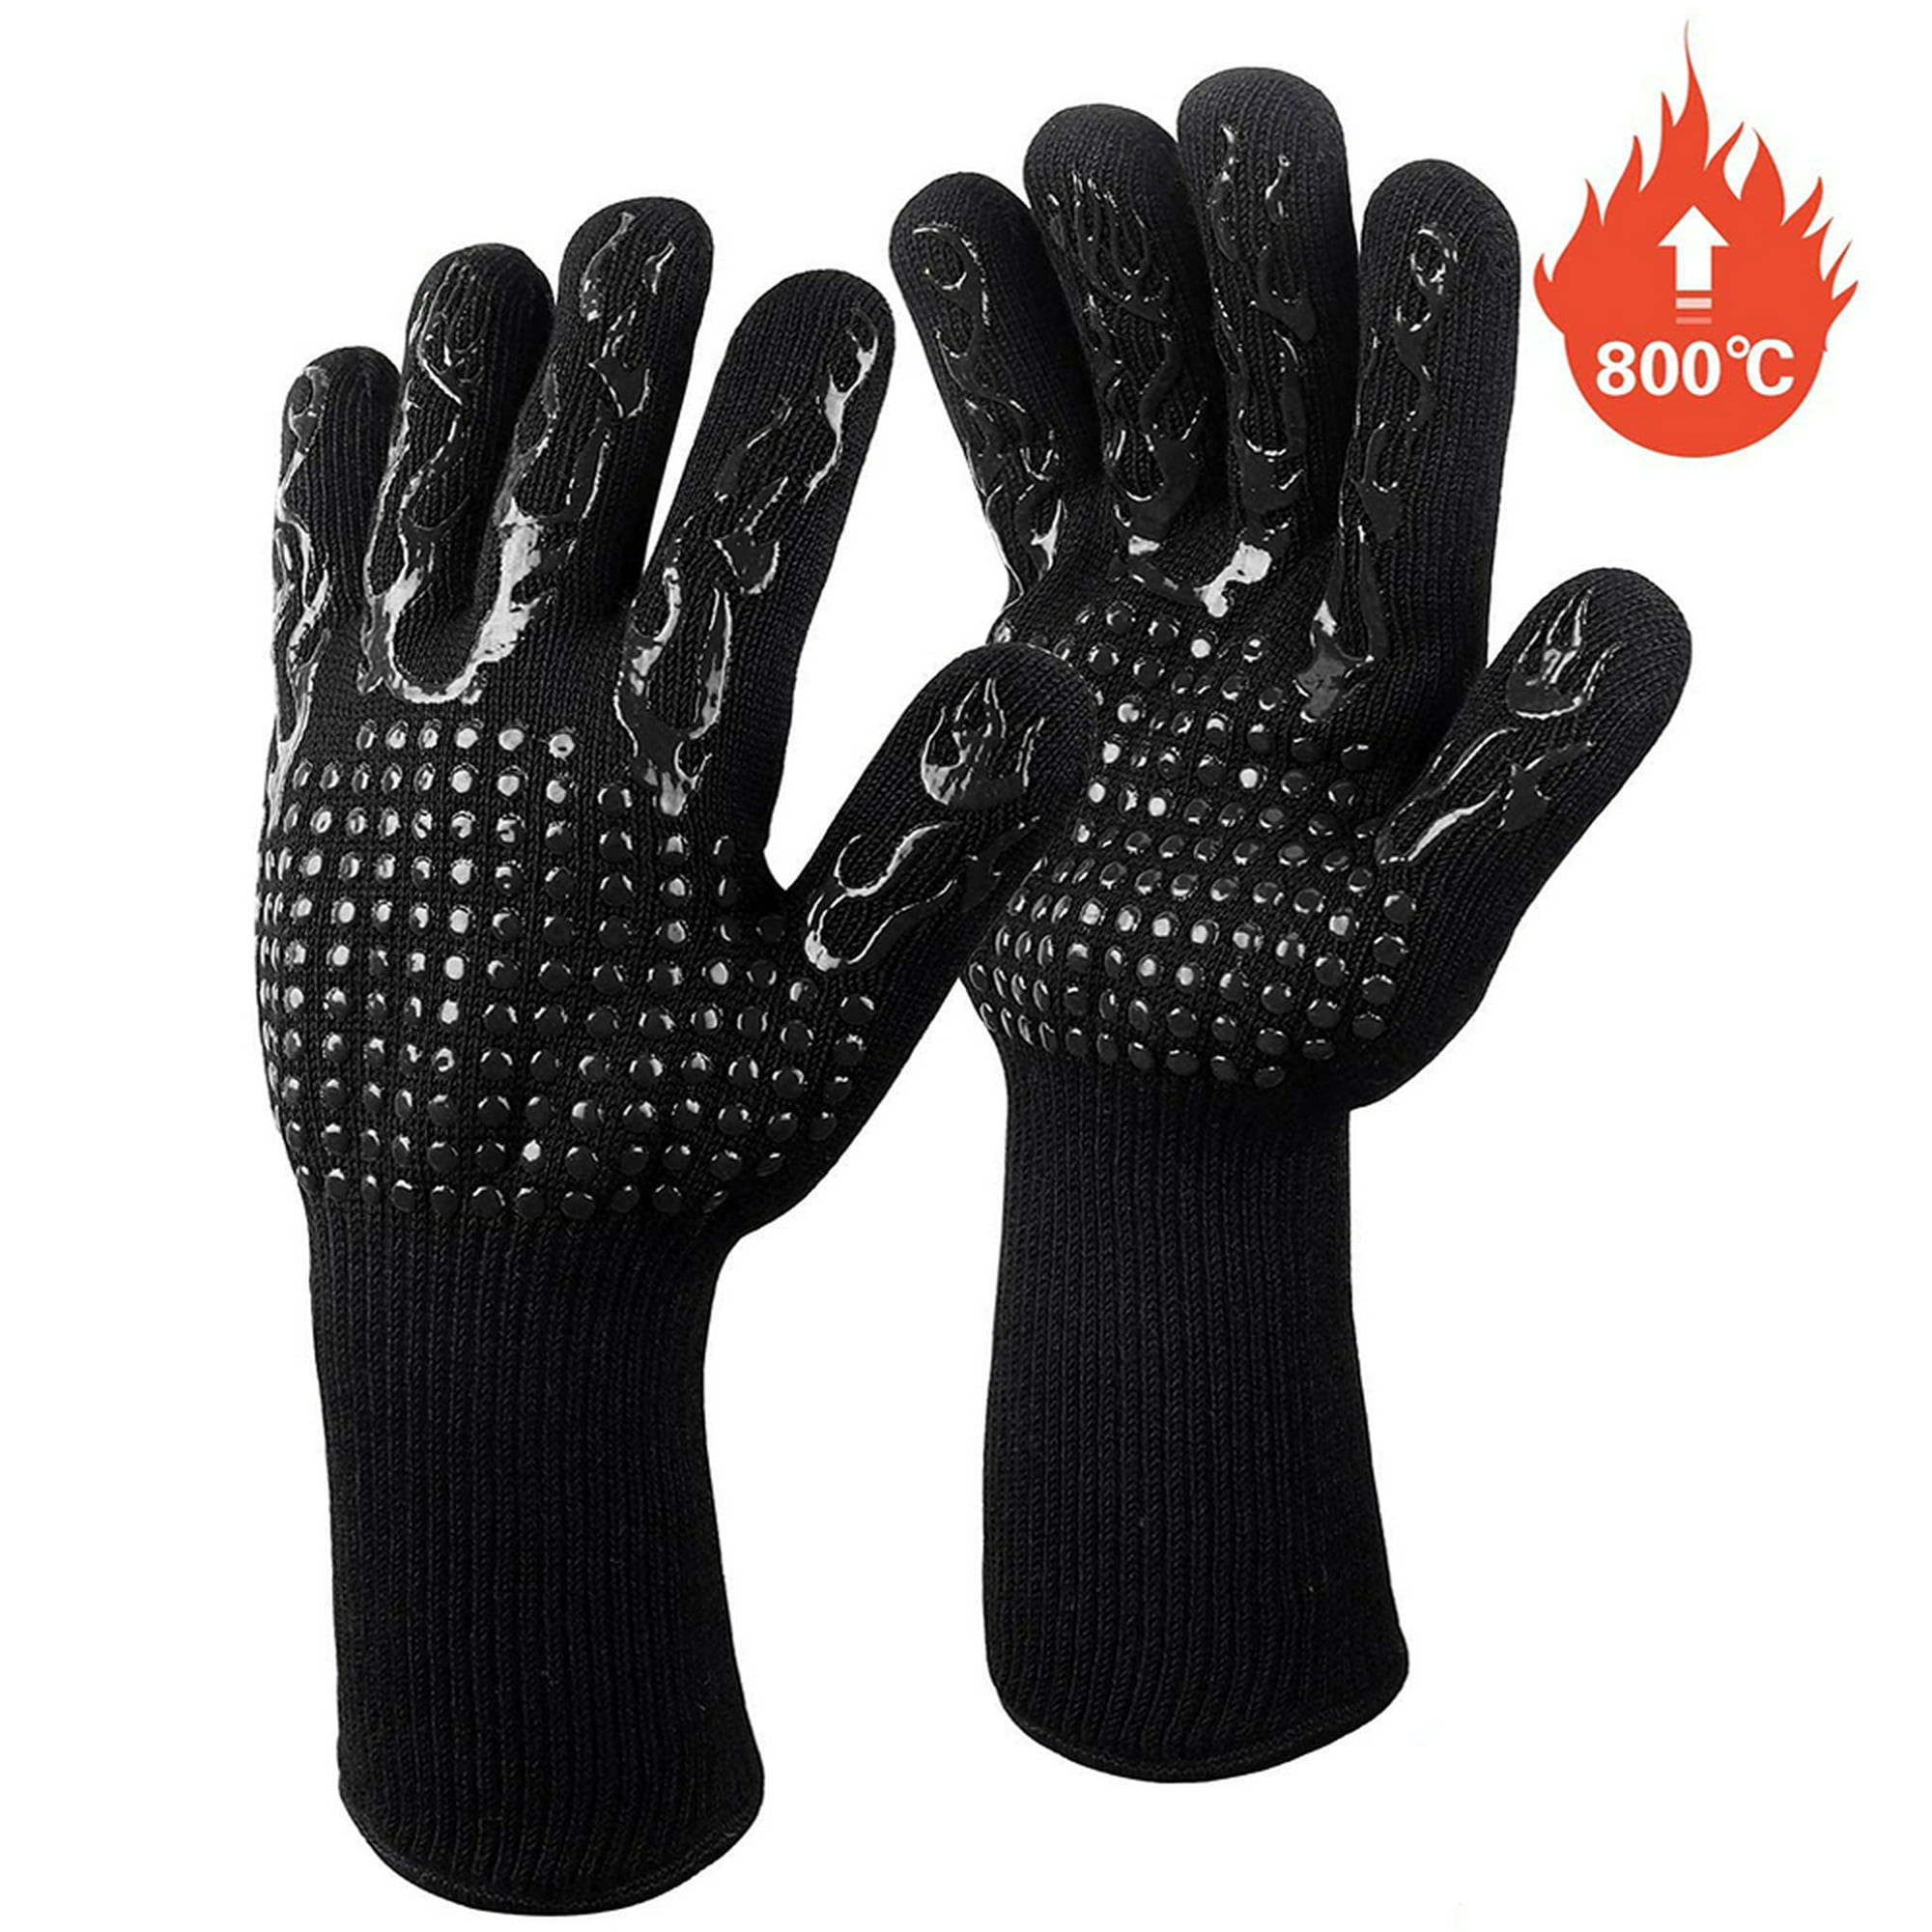  1 par de guantes de horno para cocina, resistentes al calor,  forro de algodón suave, guantes de horno de silicona antideslizantes,  guantes de horno resistentes al calor, par de guantes de